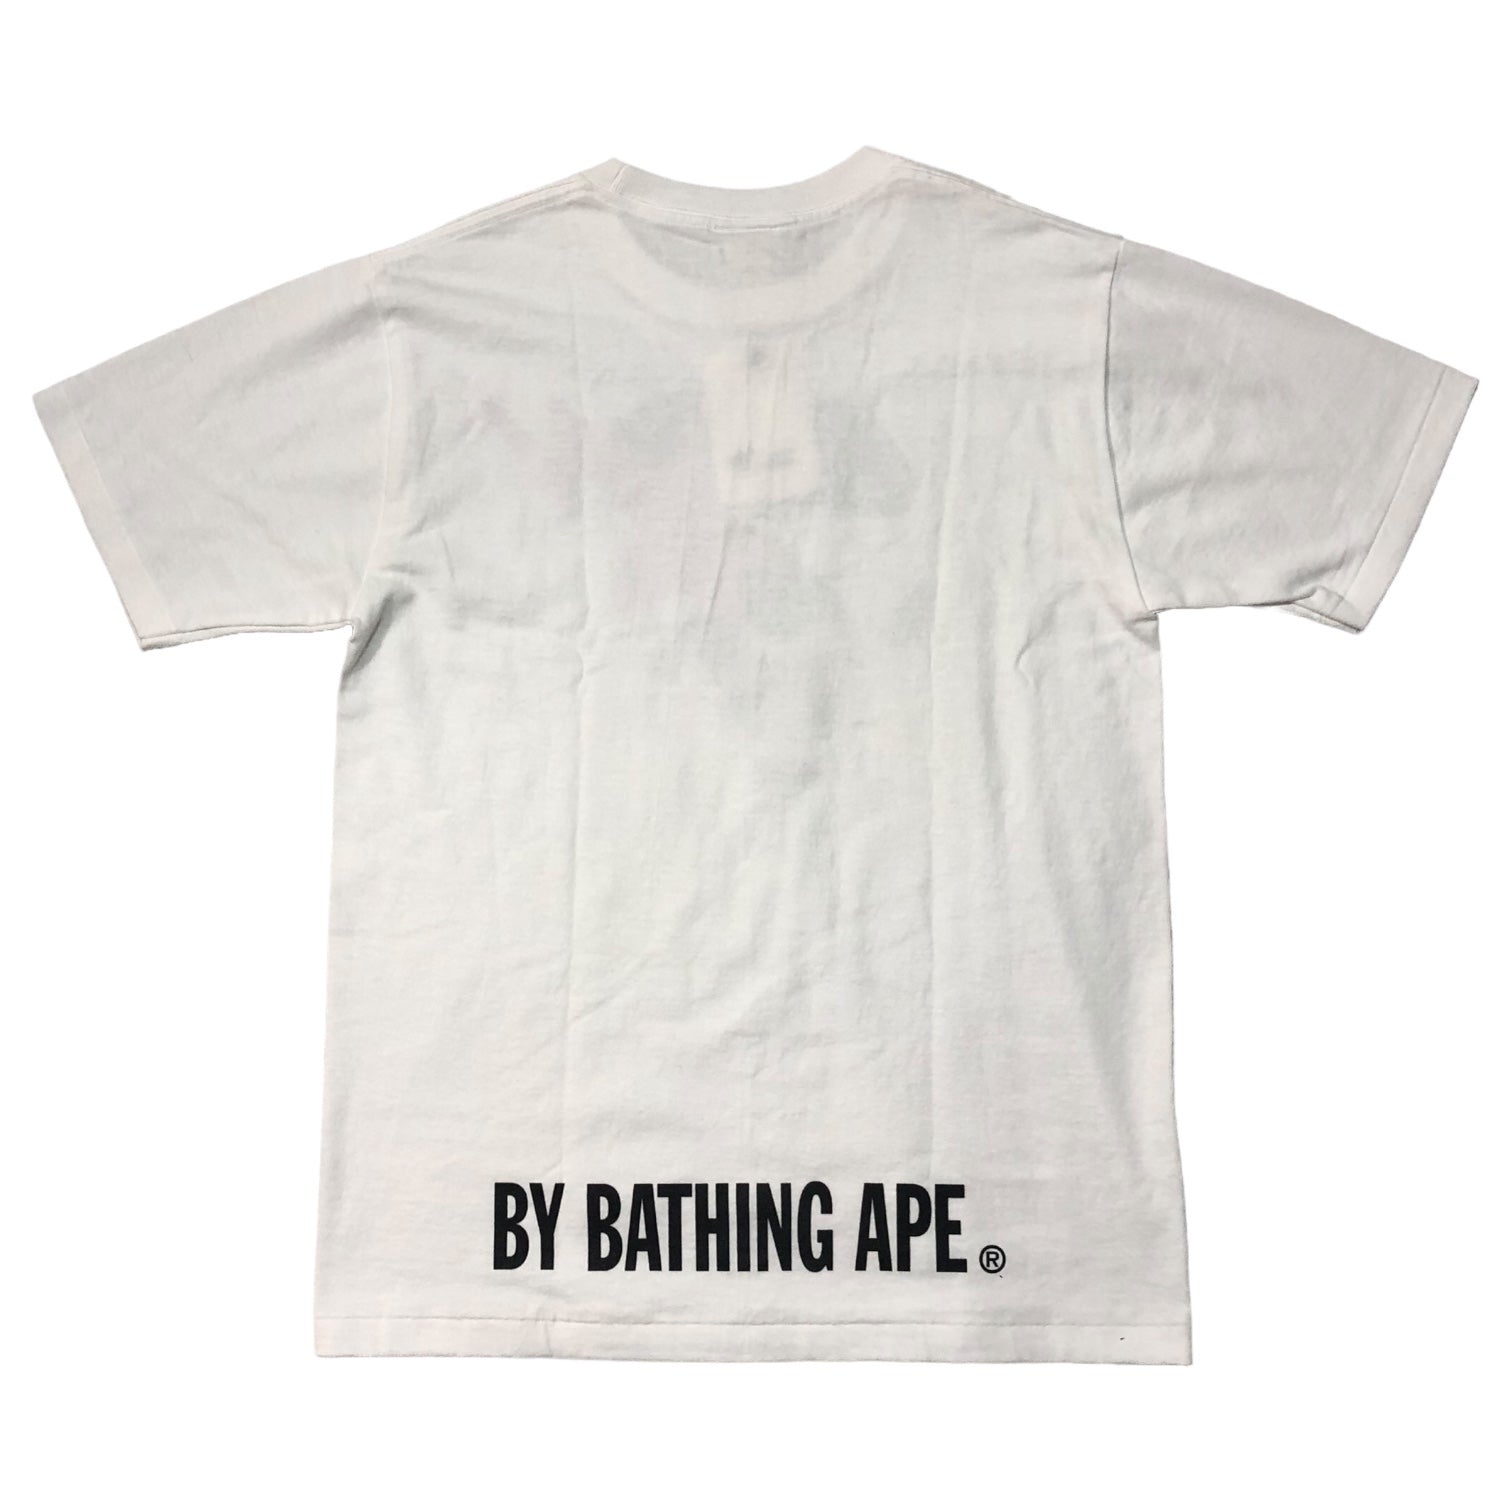 A BATHING APE(アベイシングエイプ) STA FACE Tシャツ SIZE S ホワイト×ブラック×レッド